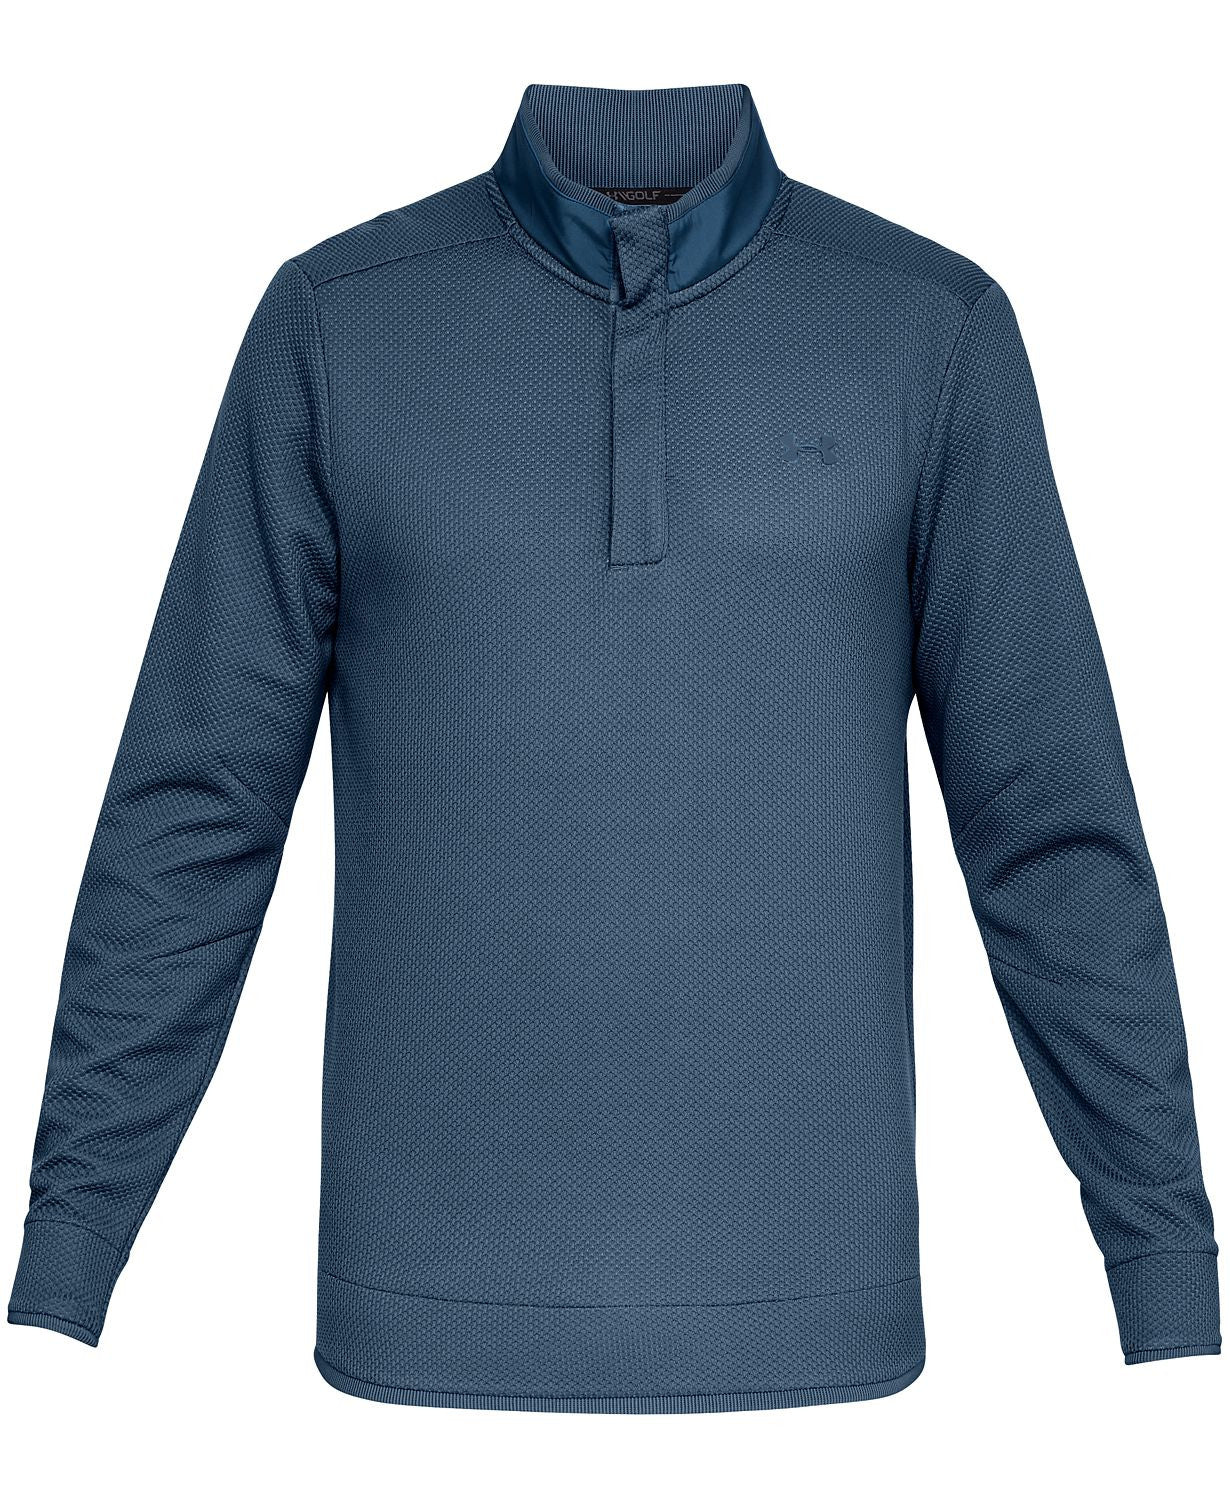 Under Armour Storm Sweater Fleece Golf Shirt Blue